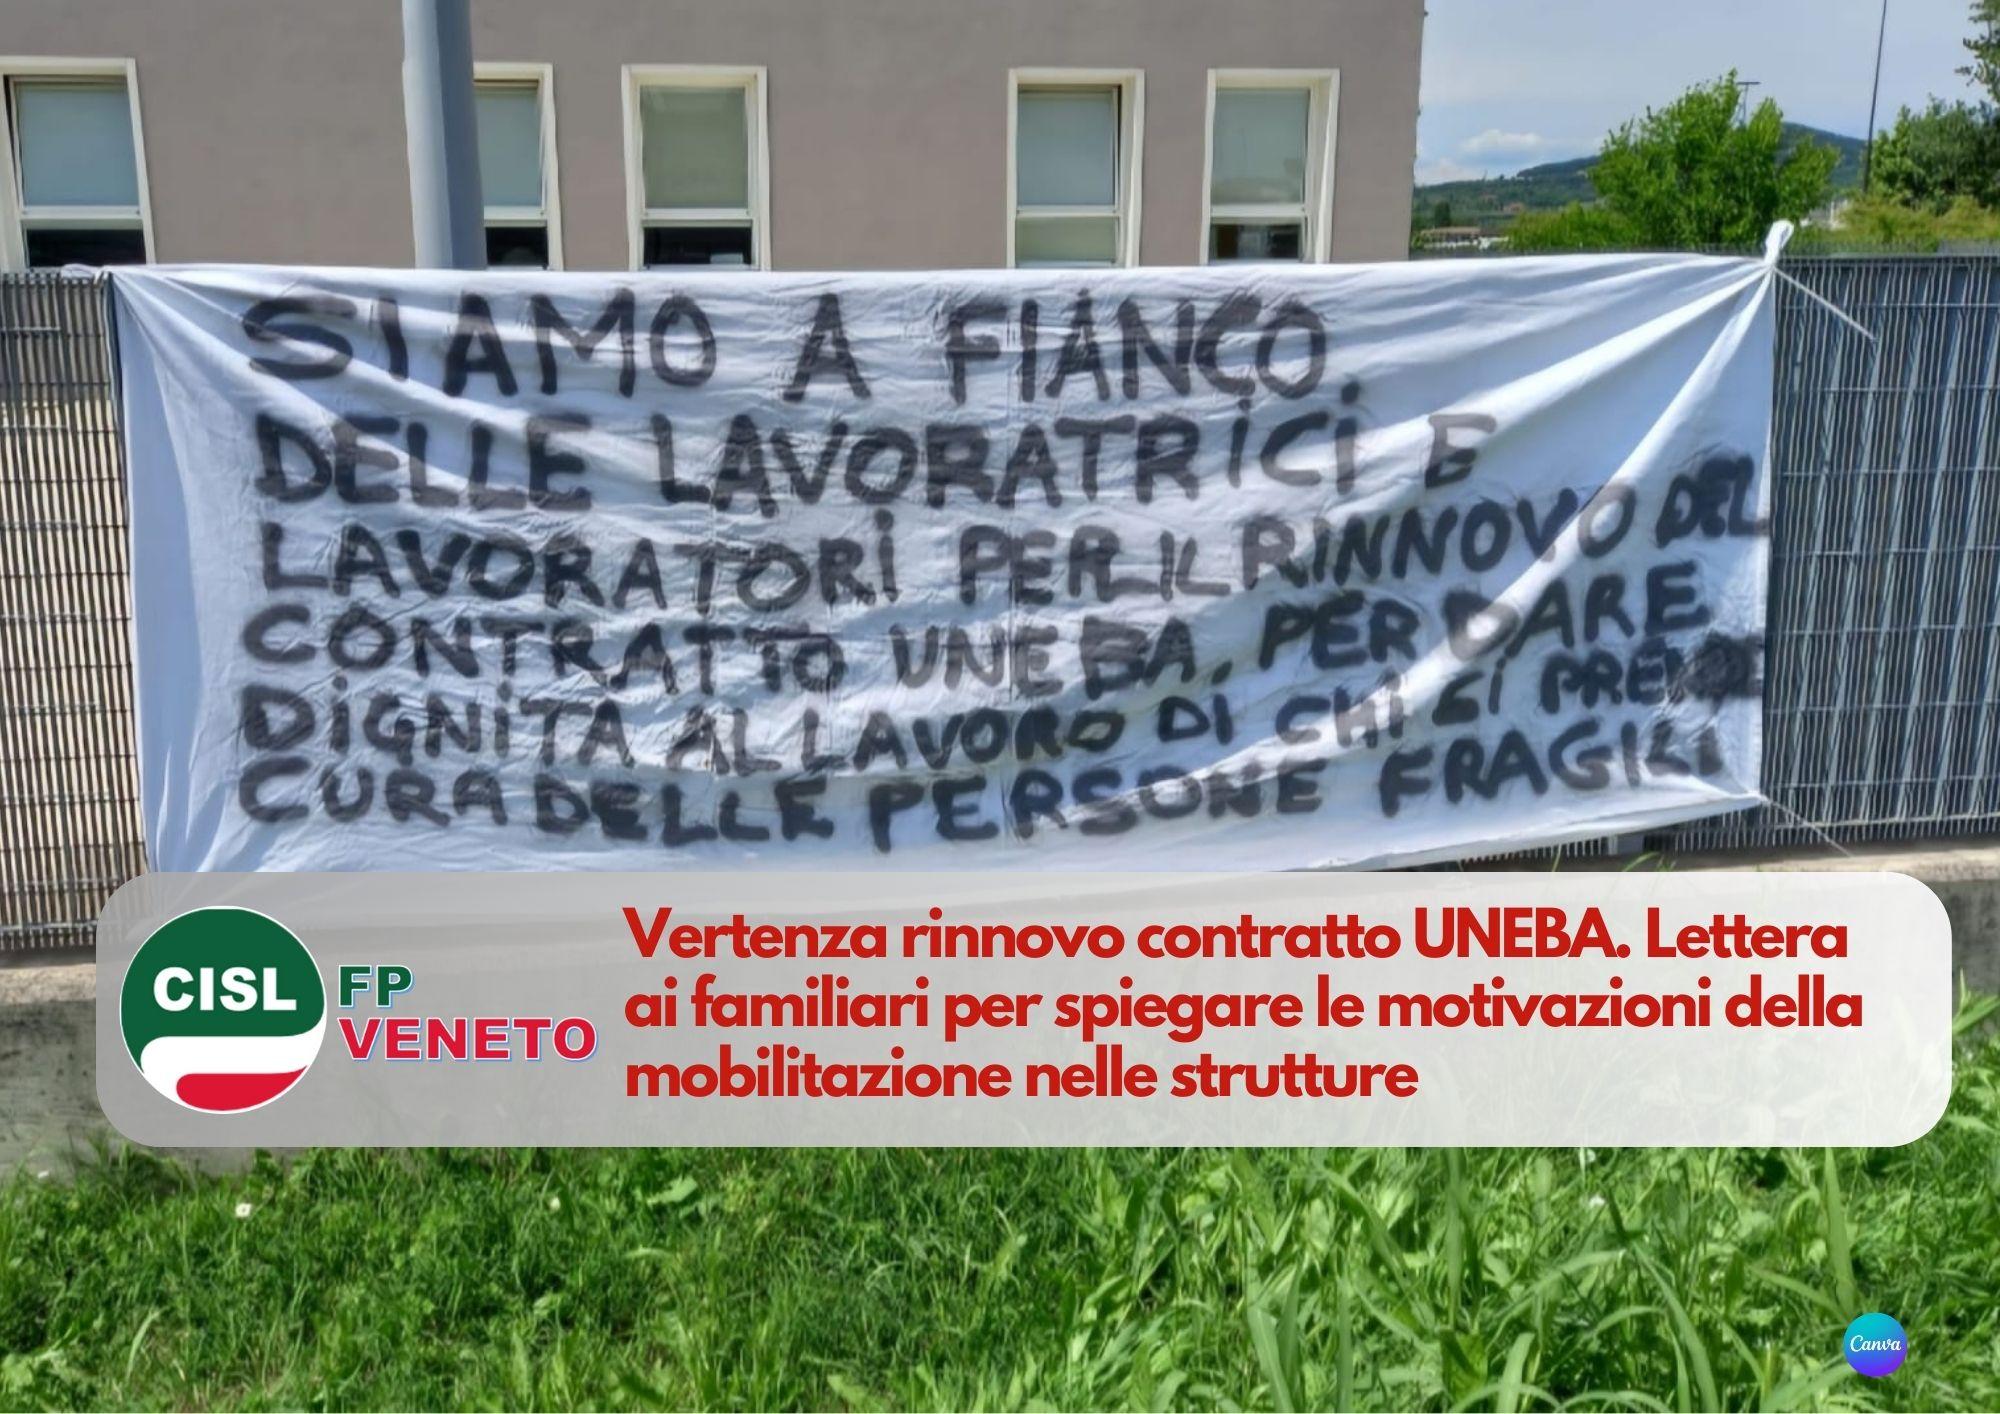 CISL FP Veneto. Lettera ai familiari per spiegare le motivazioni della mobilitazione strutture UNEBA